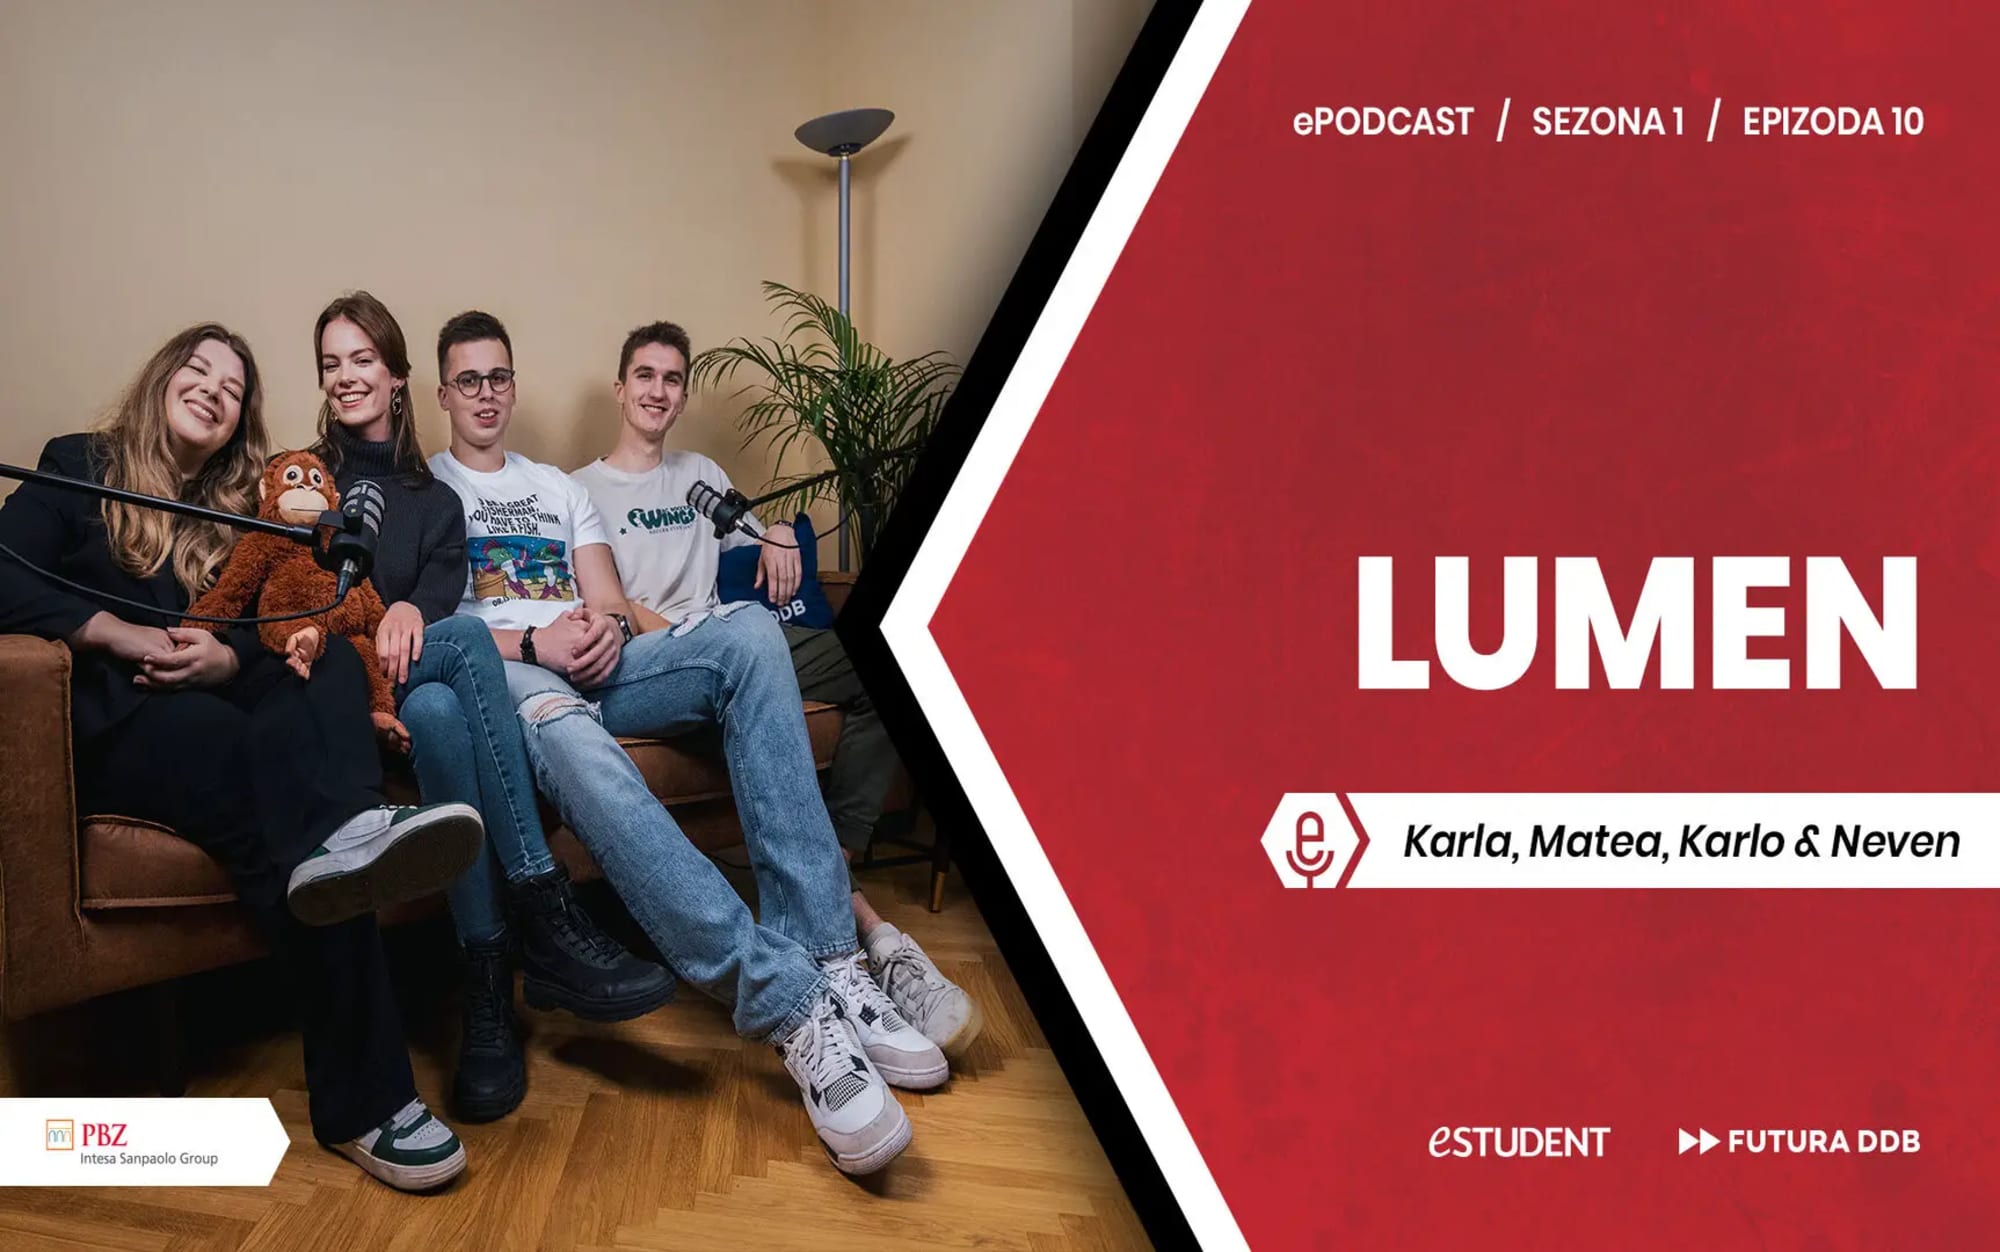 Poslušajte novu epizodu o LUMENu: najvećem studentskom natjecanju u regiji!